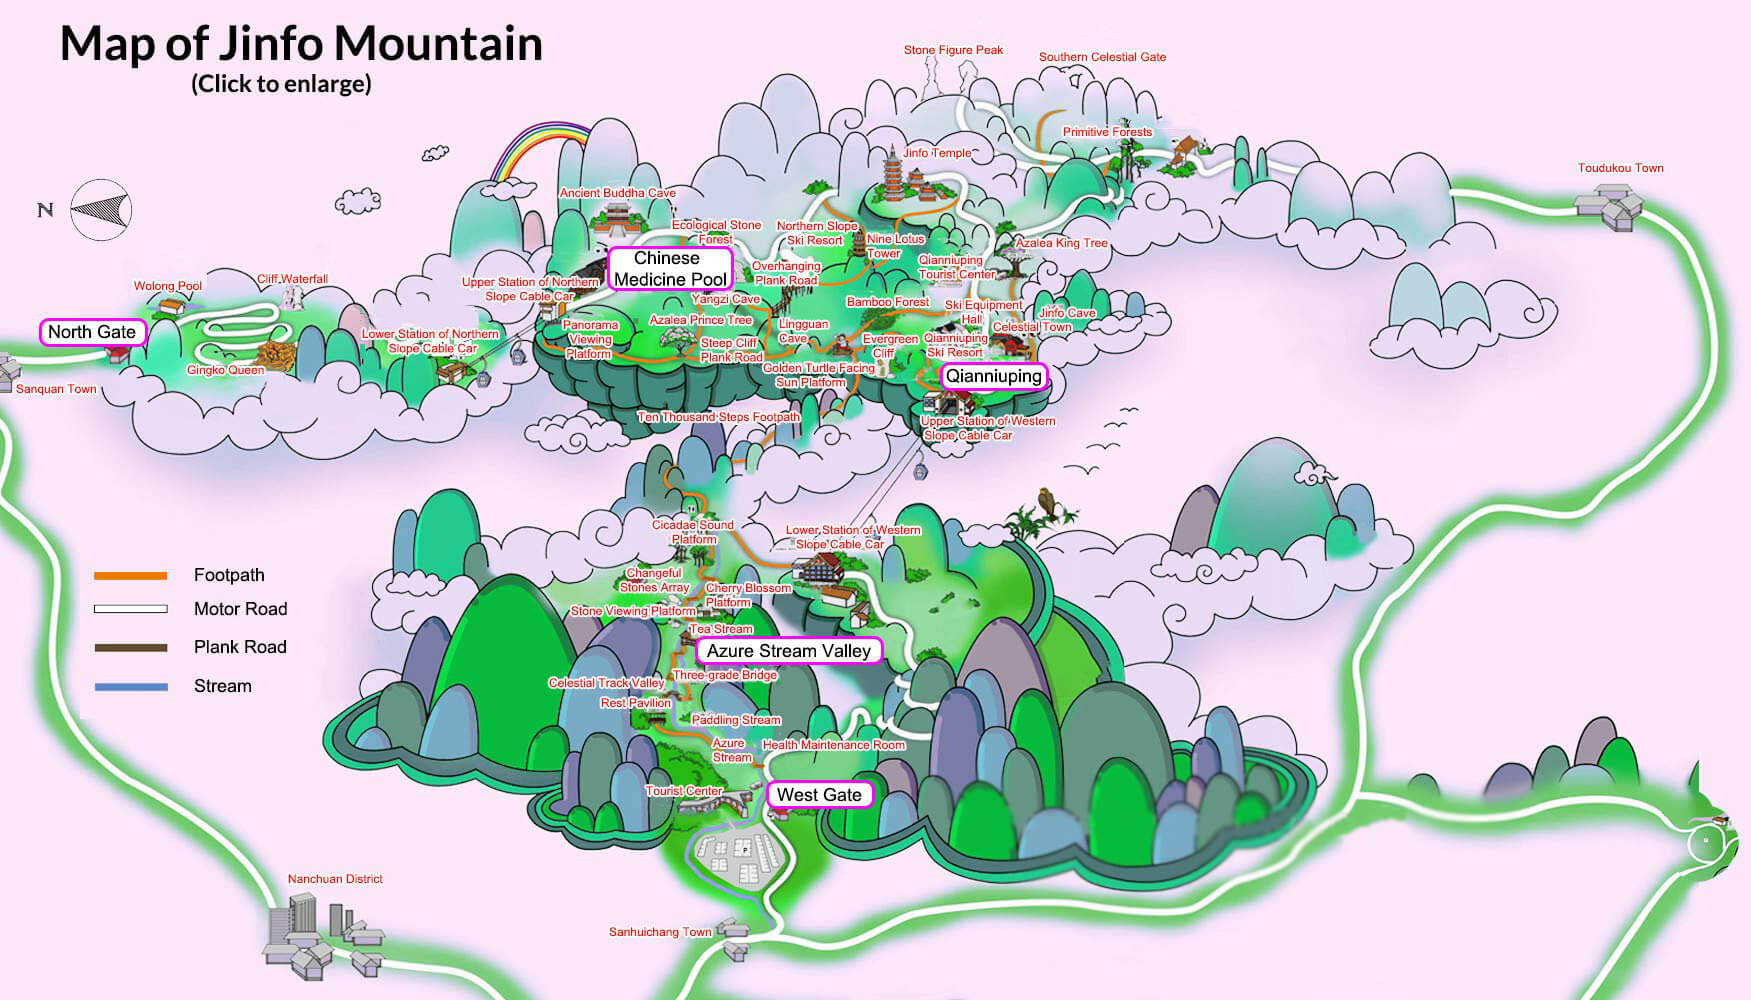 chongqing mount jinfo map